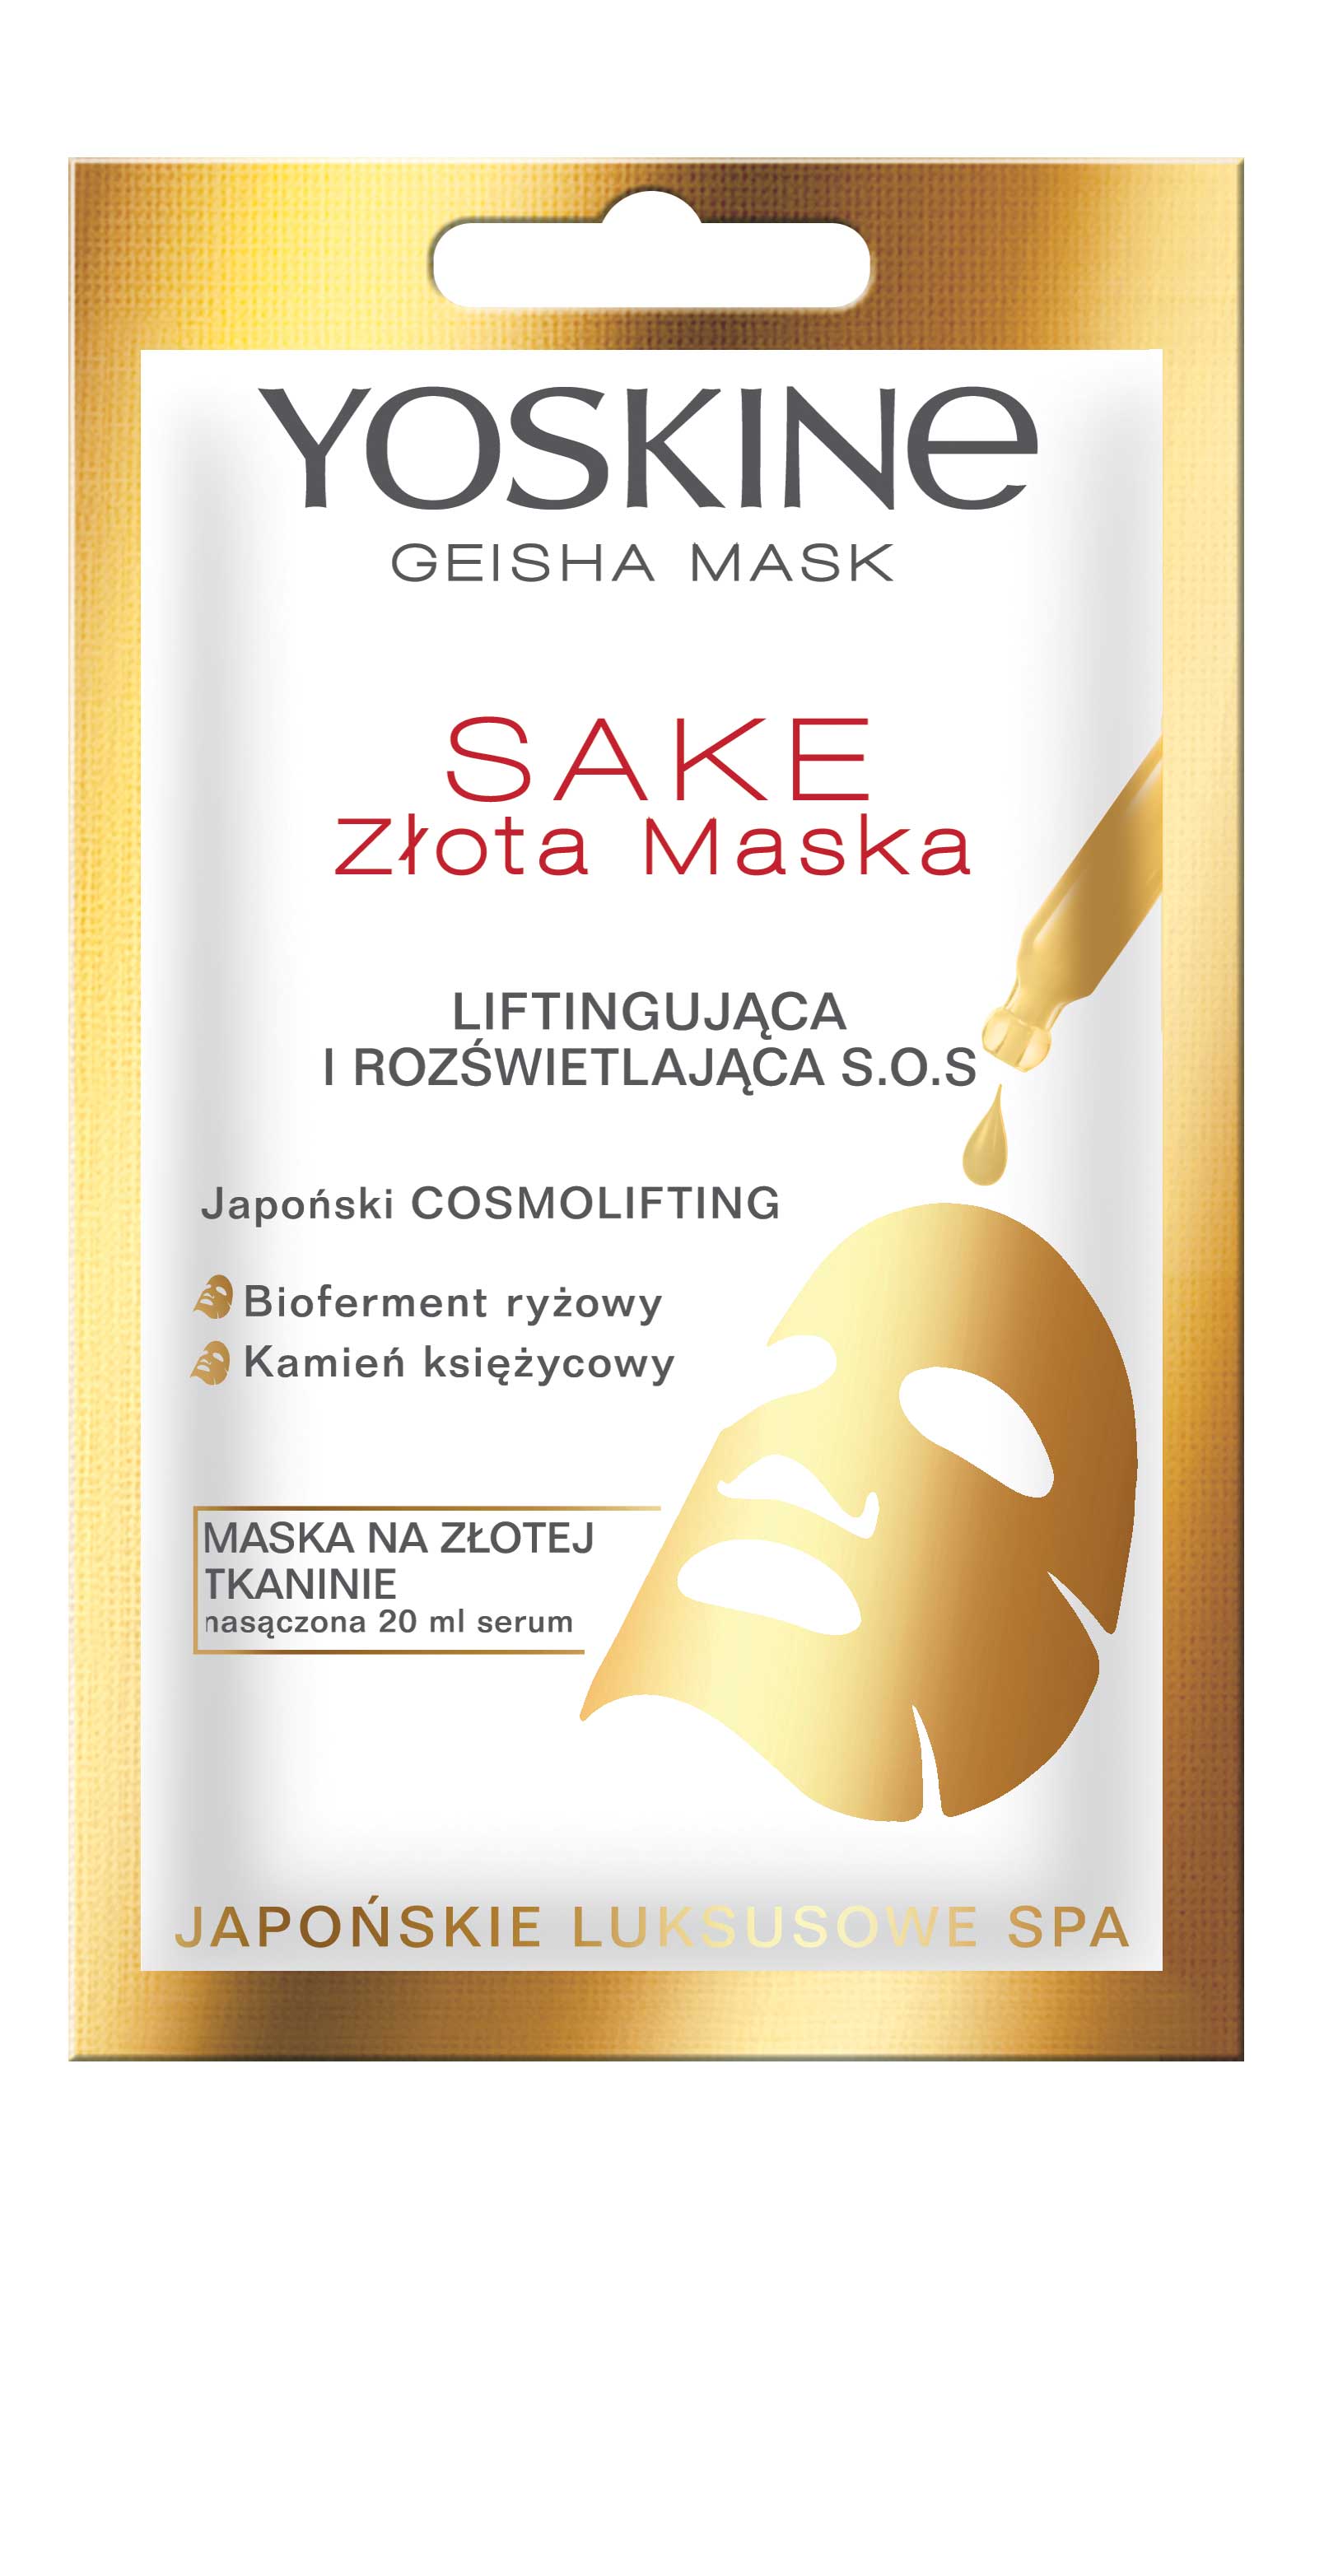 YOSKINE GEISHA MASK SAKE – Maska na złotej tkaninie